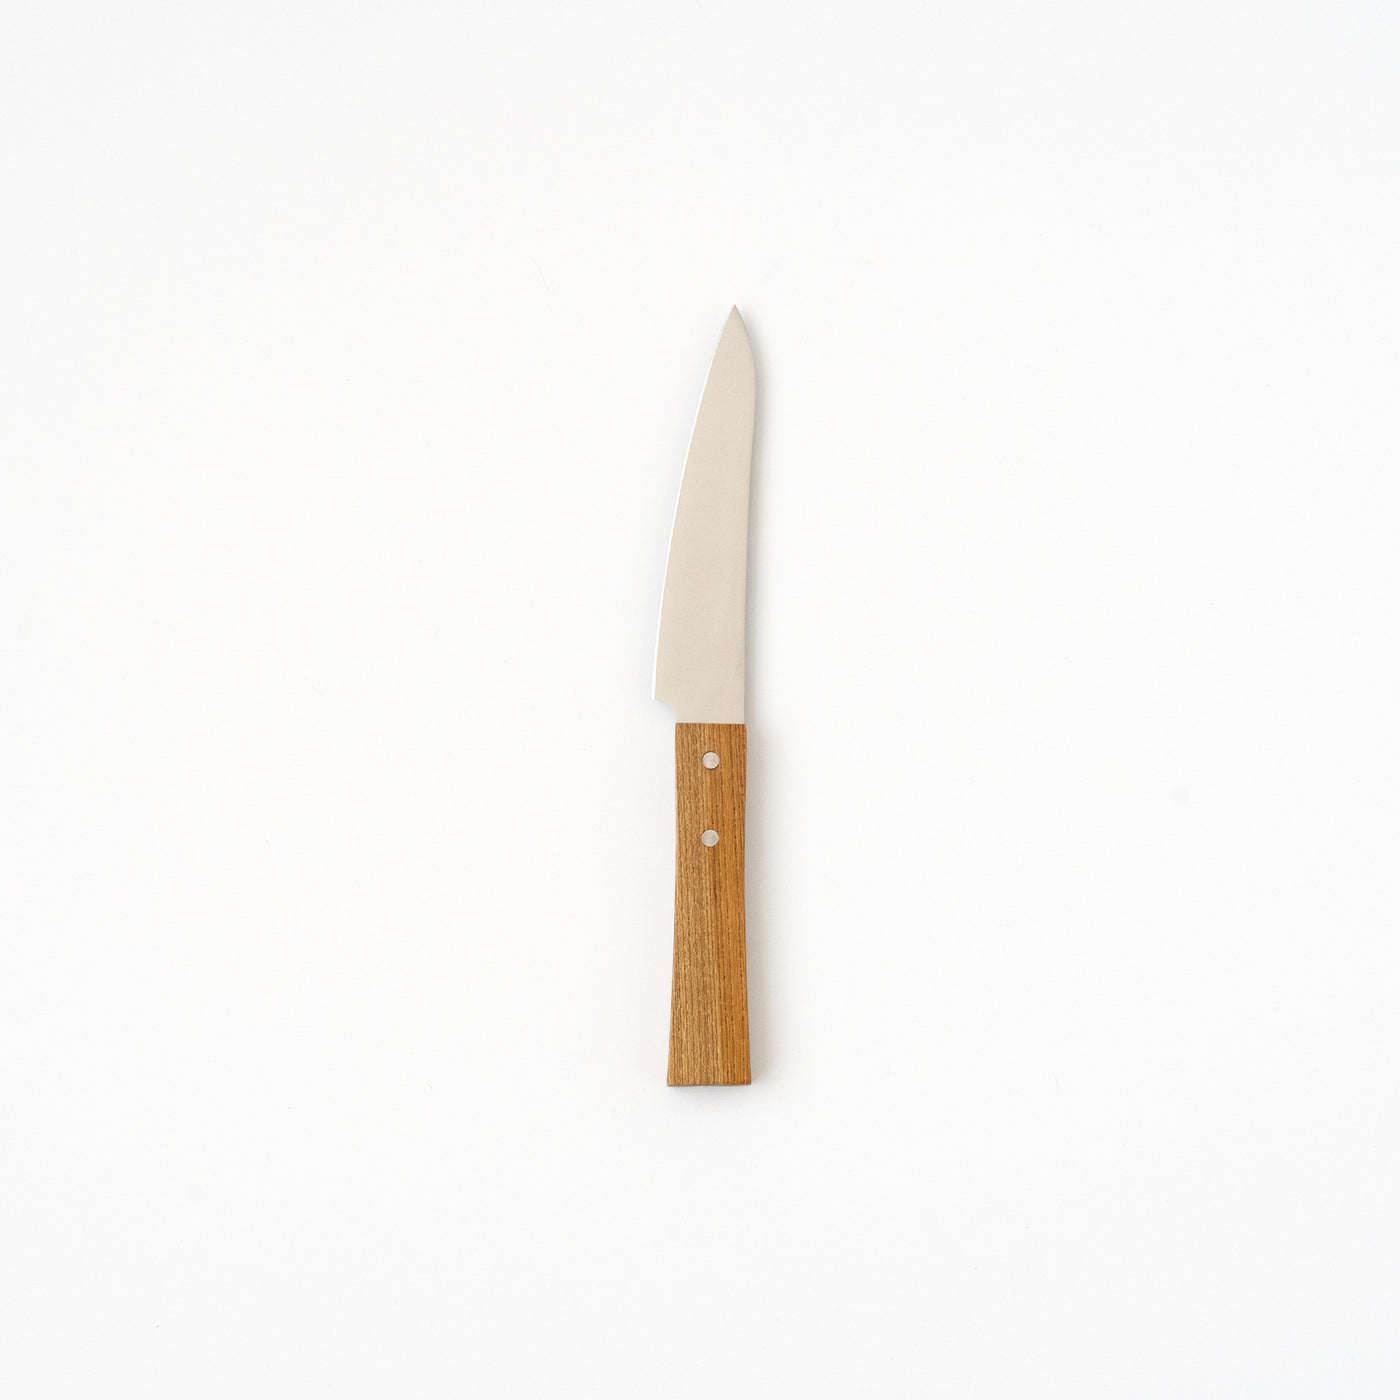 SHIZU HAMONO / MORINOKI PETTY KNIFE